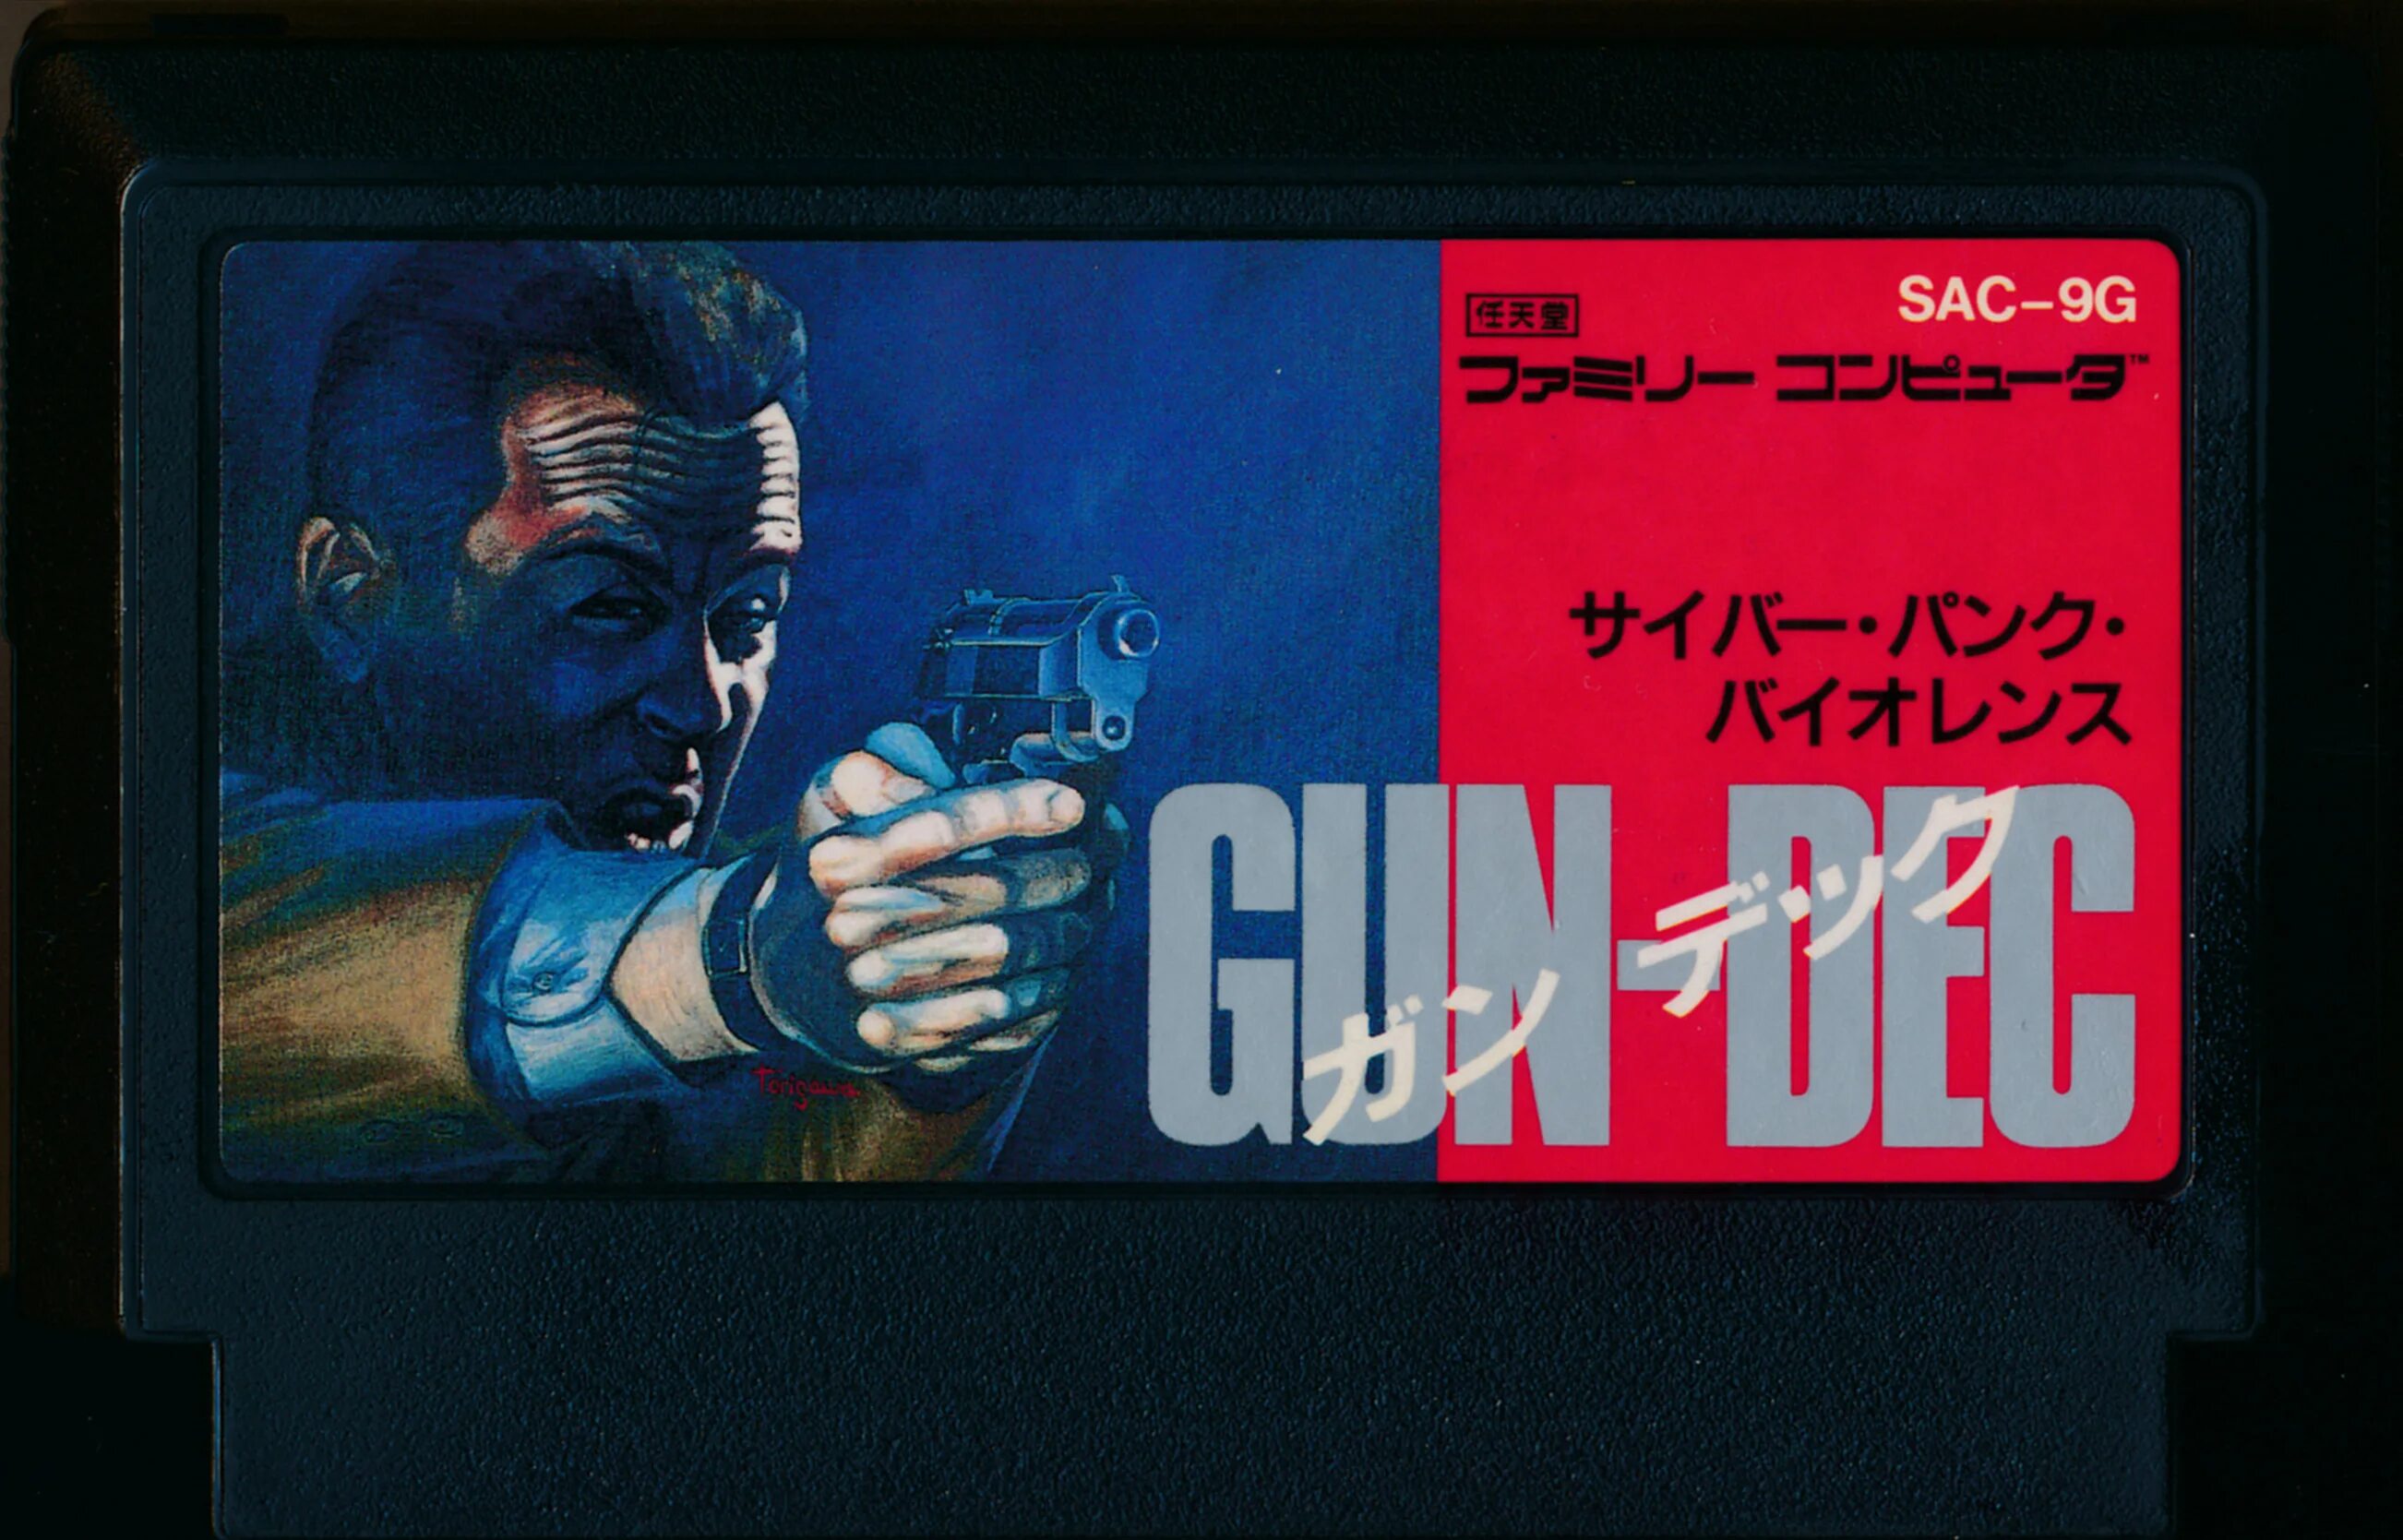 Gun project. : Vice: Project Doom \ Gun-Dec. Gun Dec NES. Денди Gun Dec. Дум на Денди.